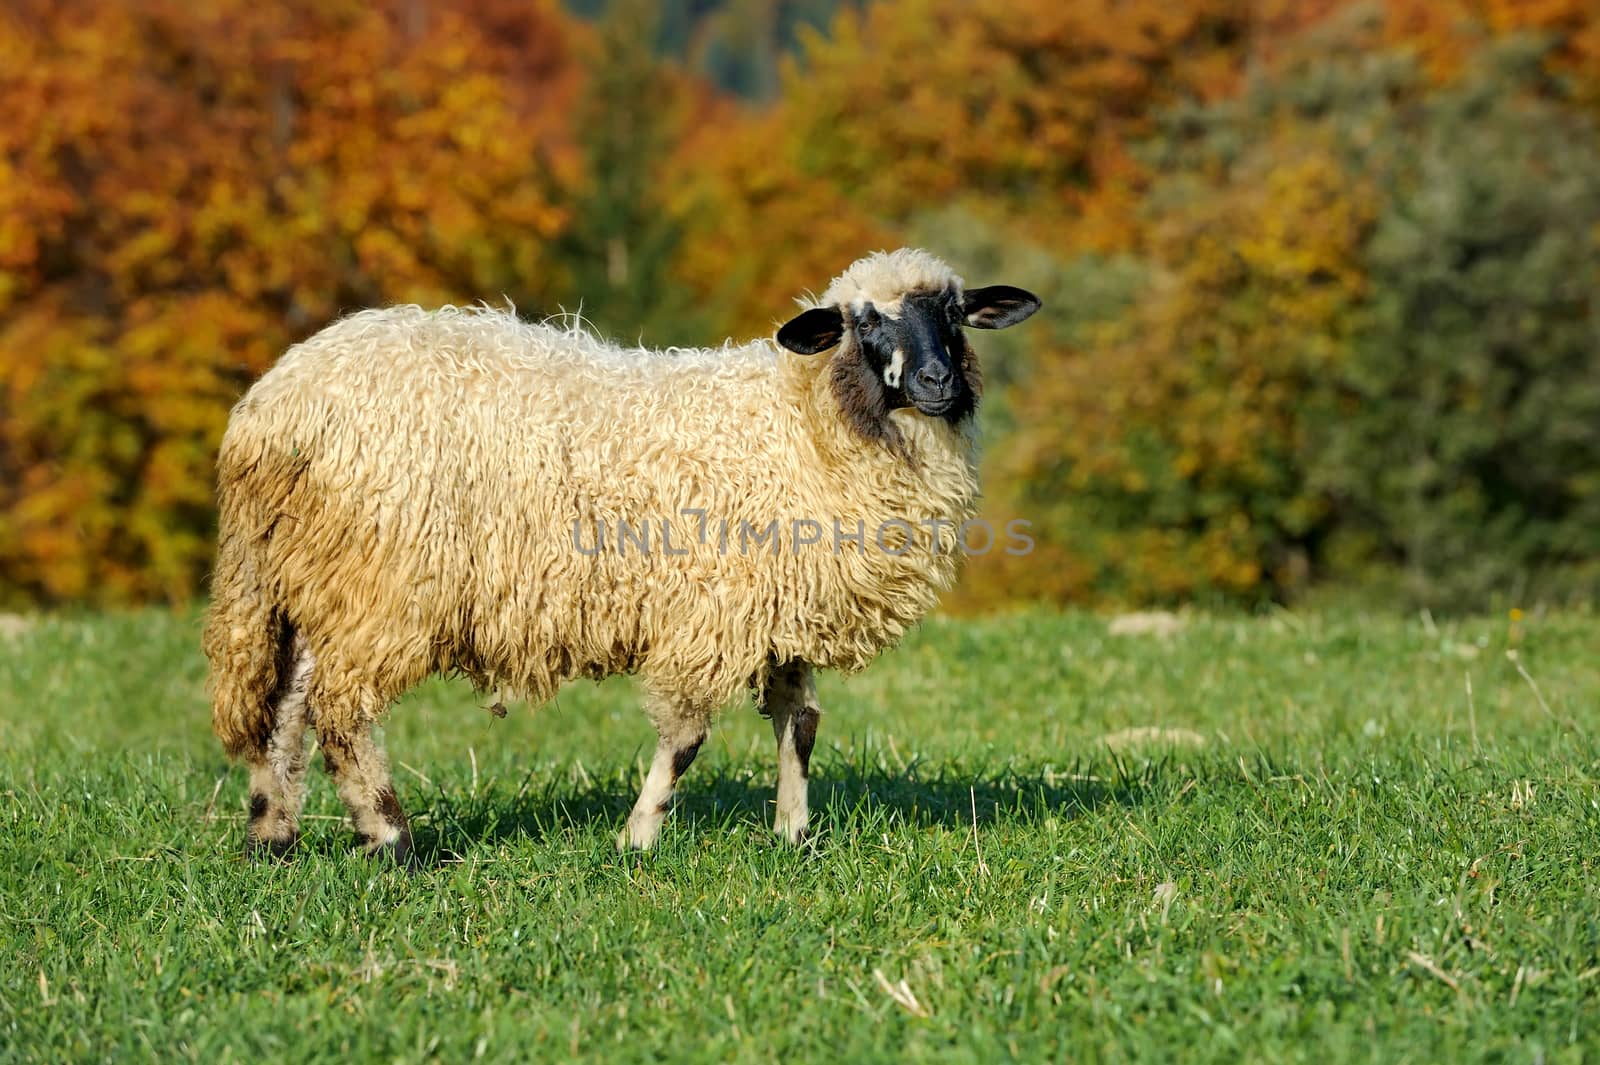 Sheep on a meadow by byrdyak